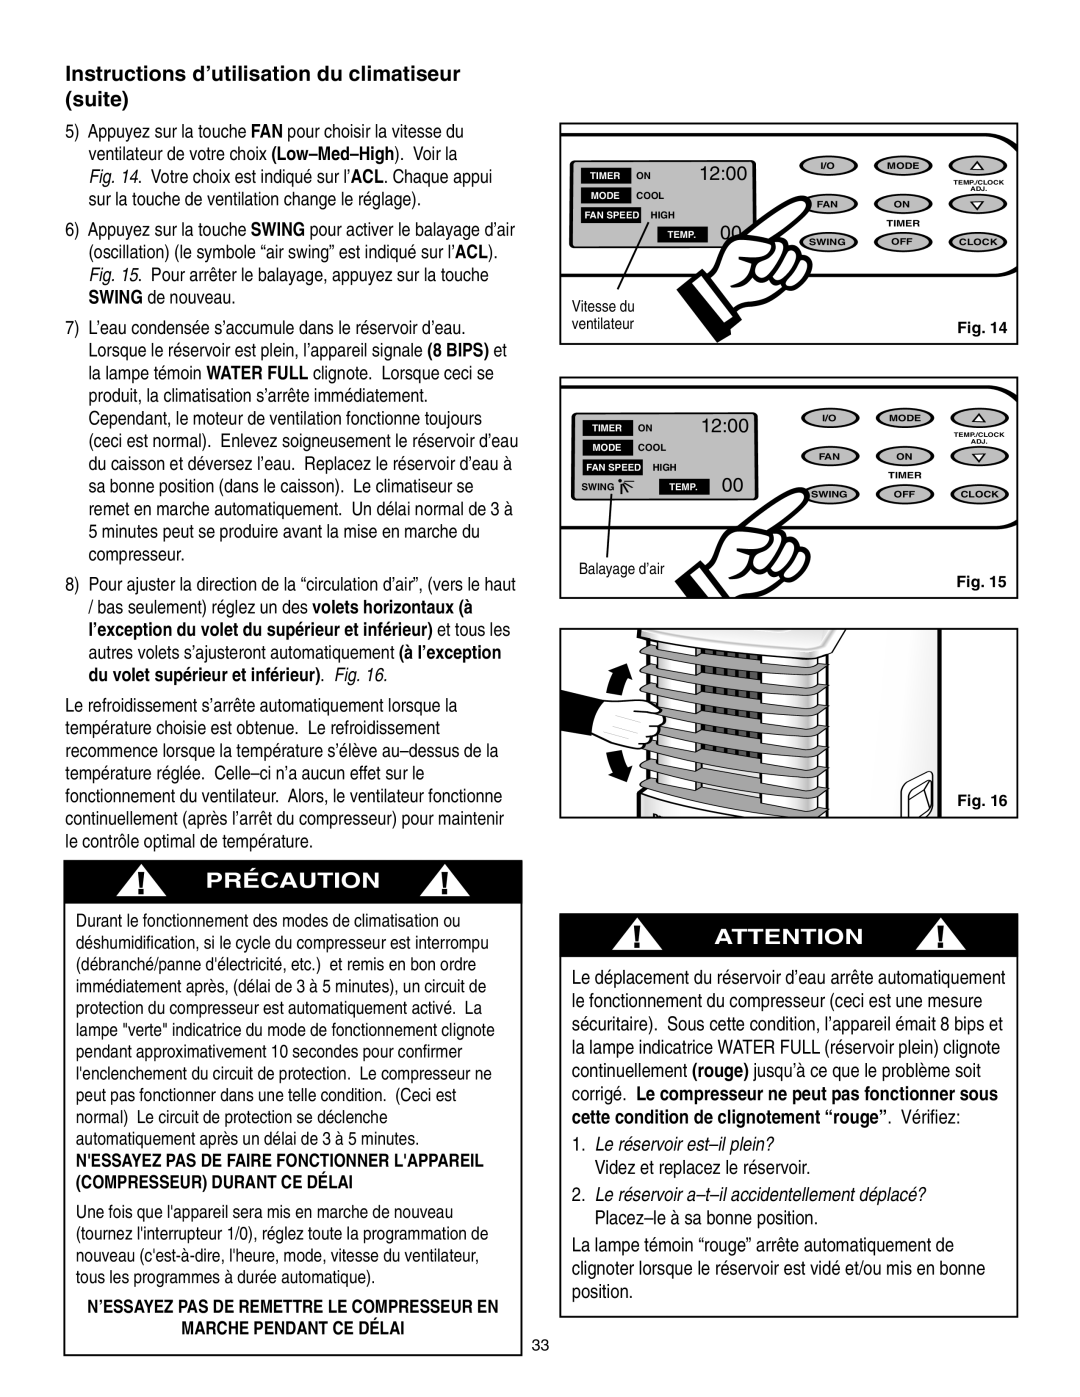 Danby SPAC8499 manual Instructions d’utilisation du climatiseur suite, Précaution, 12:00, Marche Pendant Ce Délai 